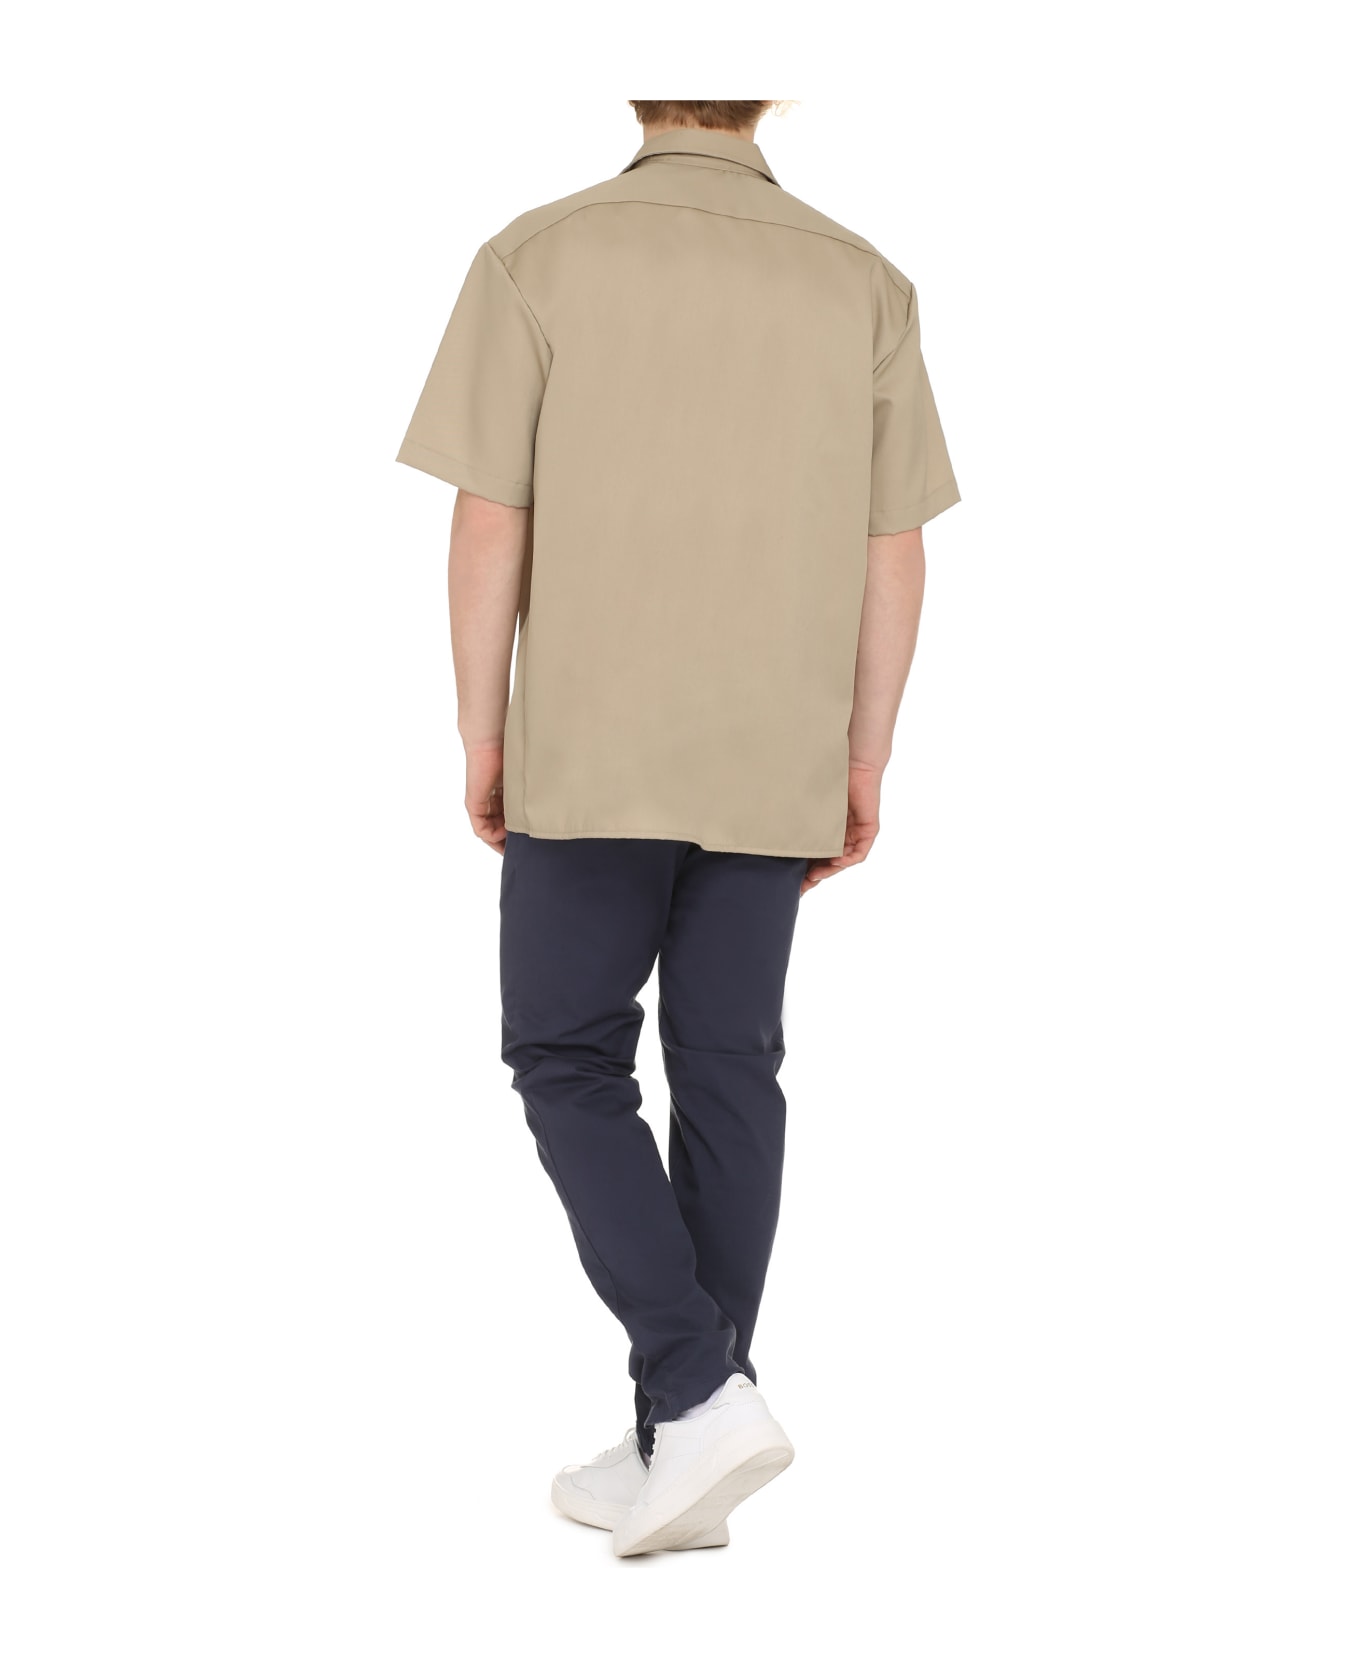 Dickies Short Sleeve Cotton Blend Shirt - Beige